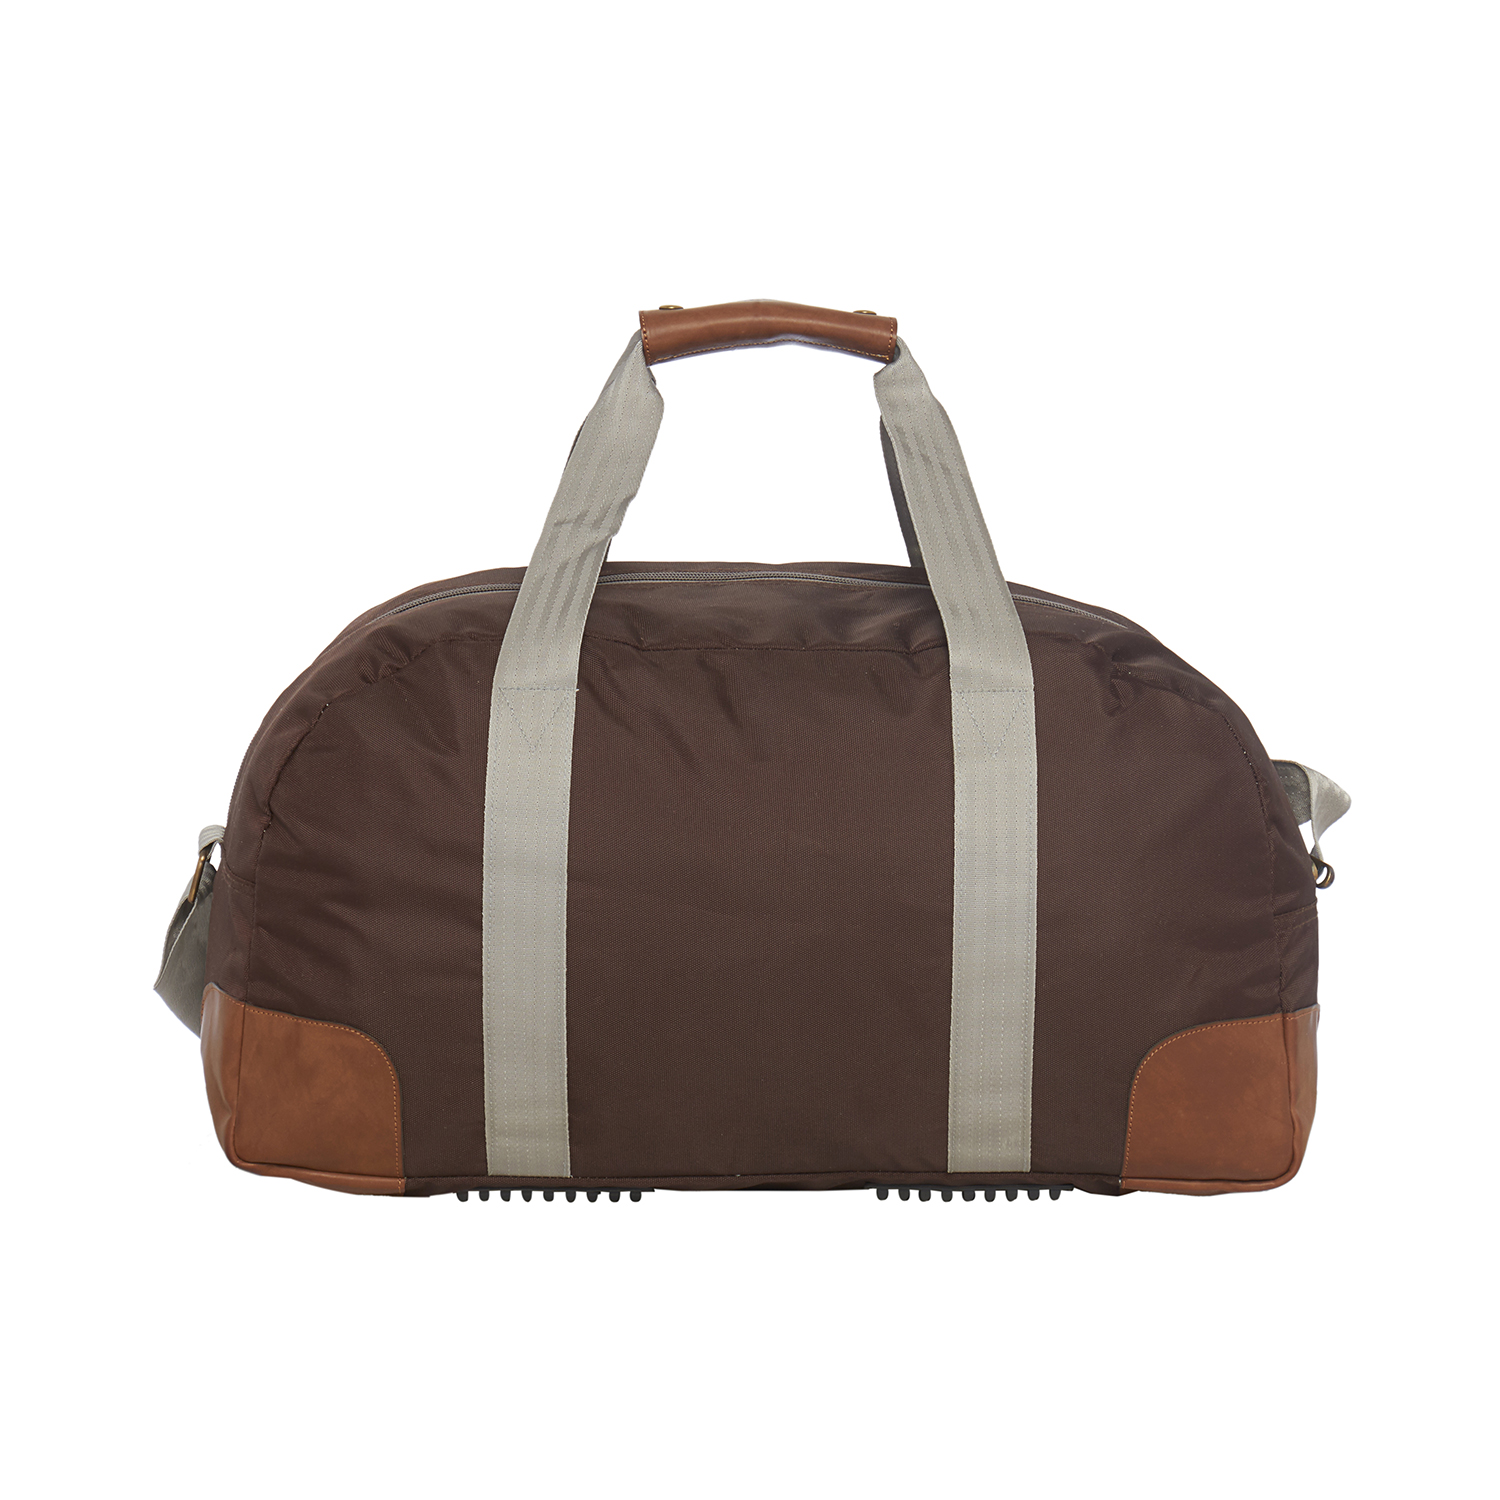 Buy BagsRUs Ares Brown Medium 40 Liter Duffel Gym Tote Travel Bag ...